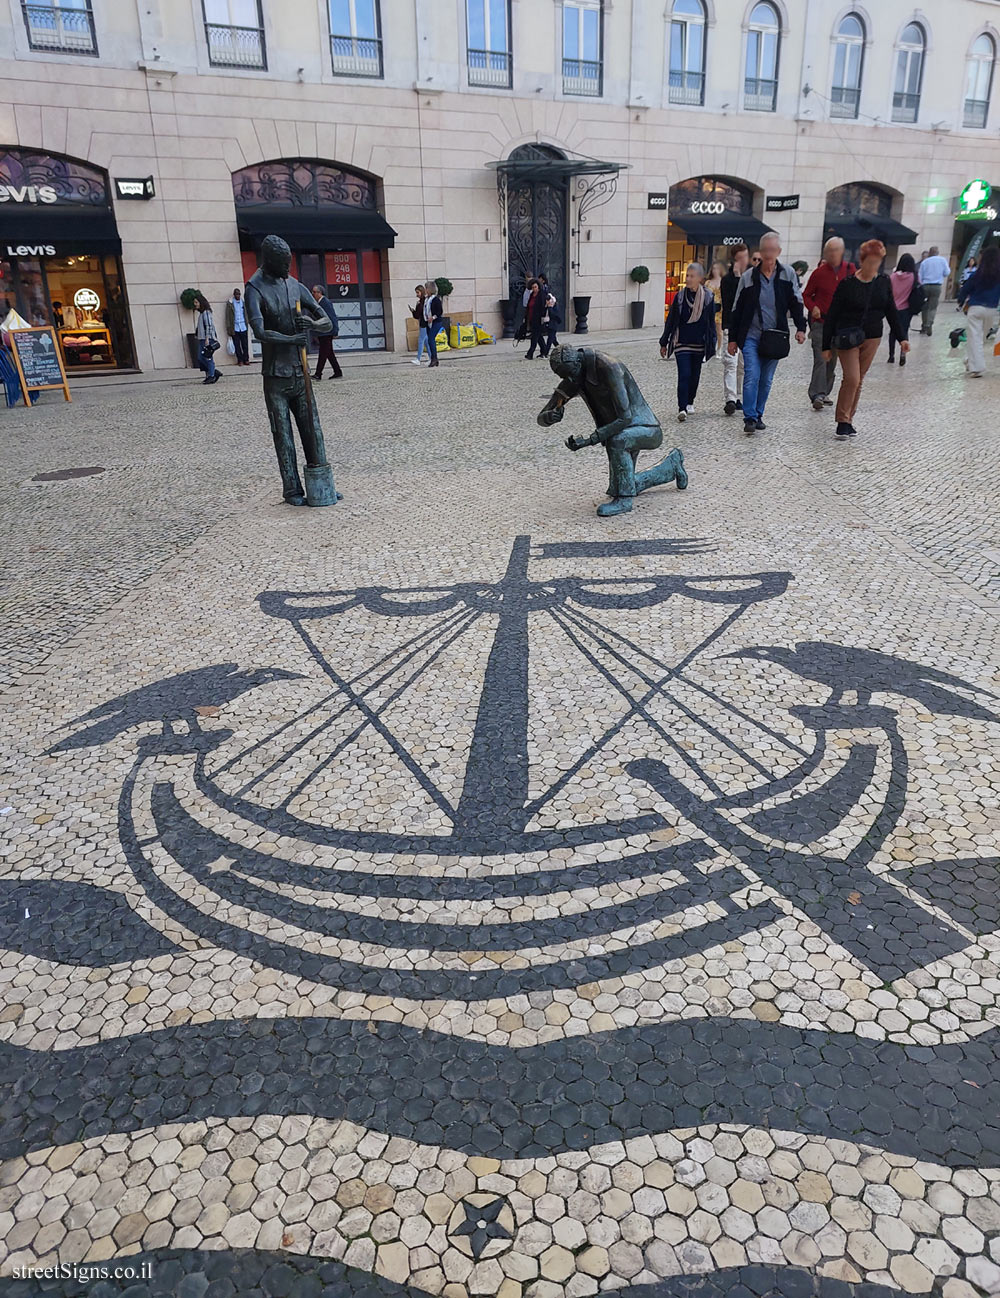 Lisbon - a commemorative statue for the pavers of the city’s sidewalks - Praça dos Restauradores 10, 1249-970 Lisboa, Portugal